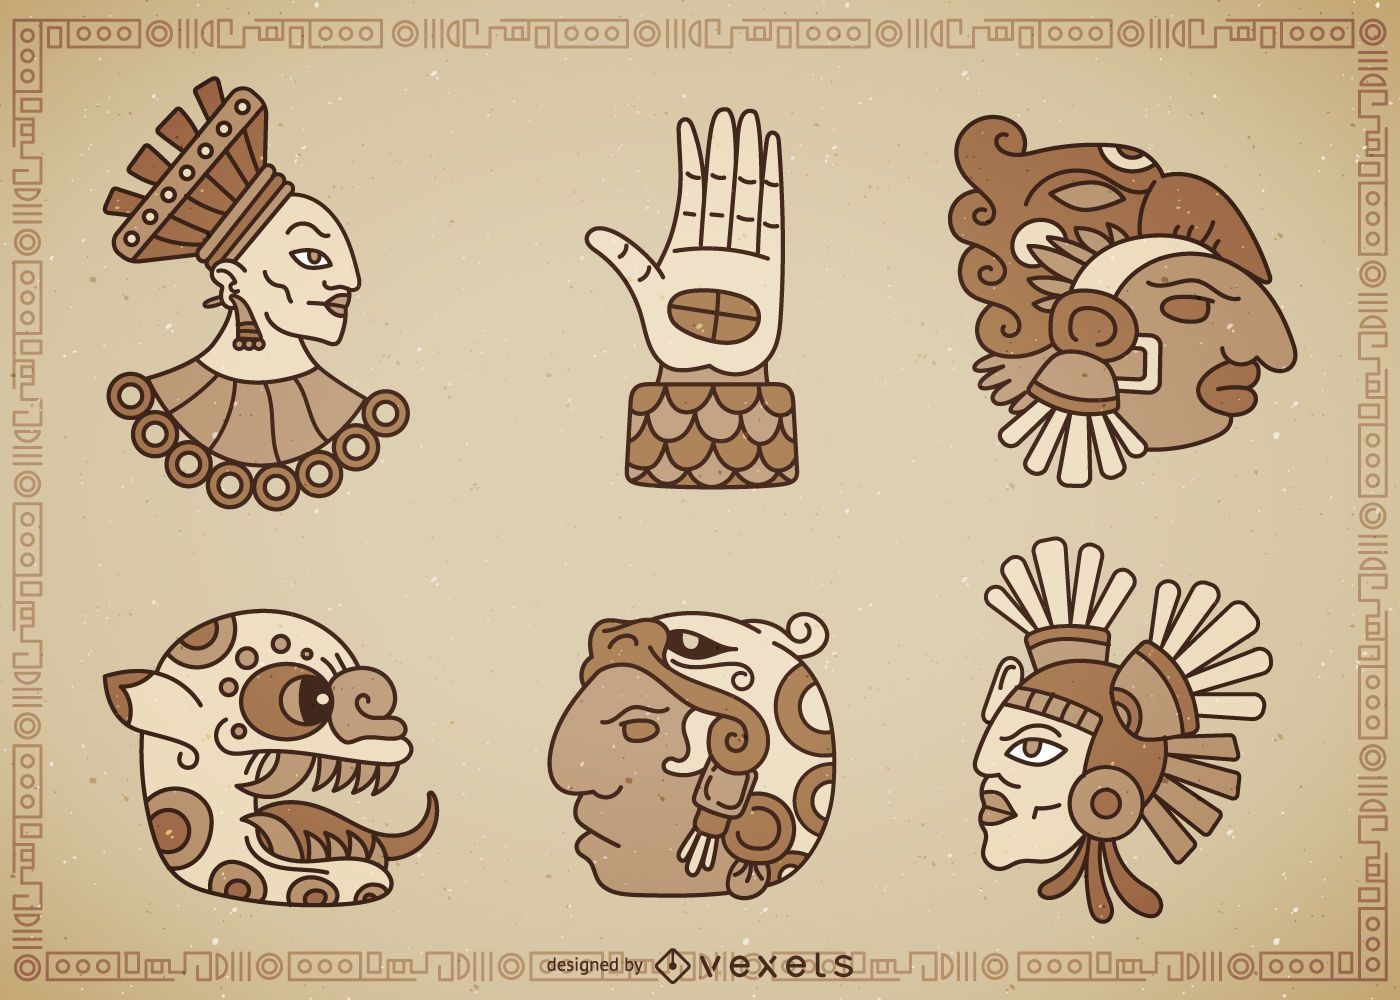 Einheimische Maya-Zeichen gesetzt